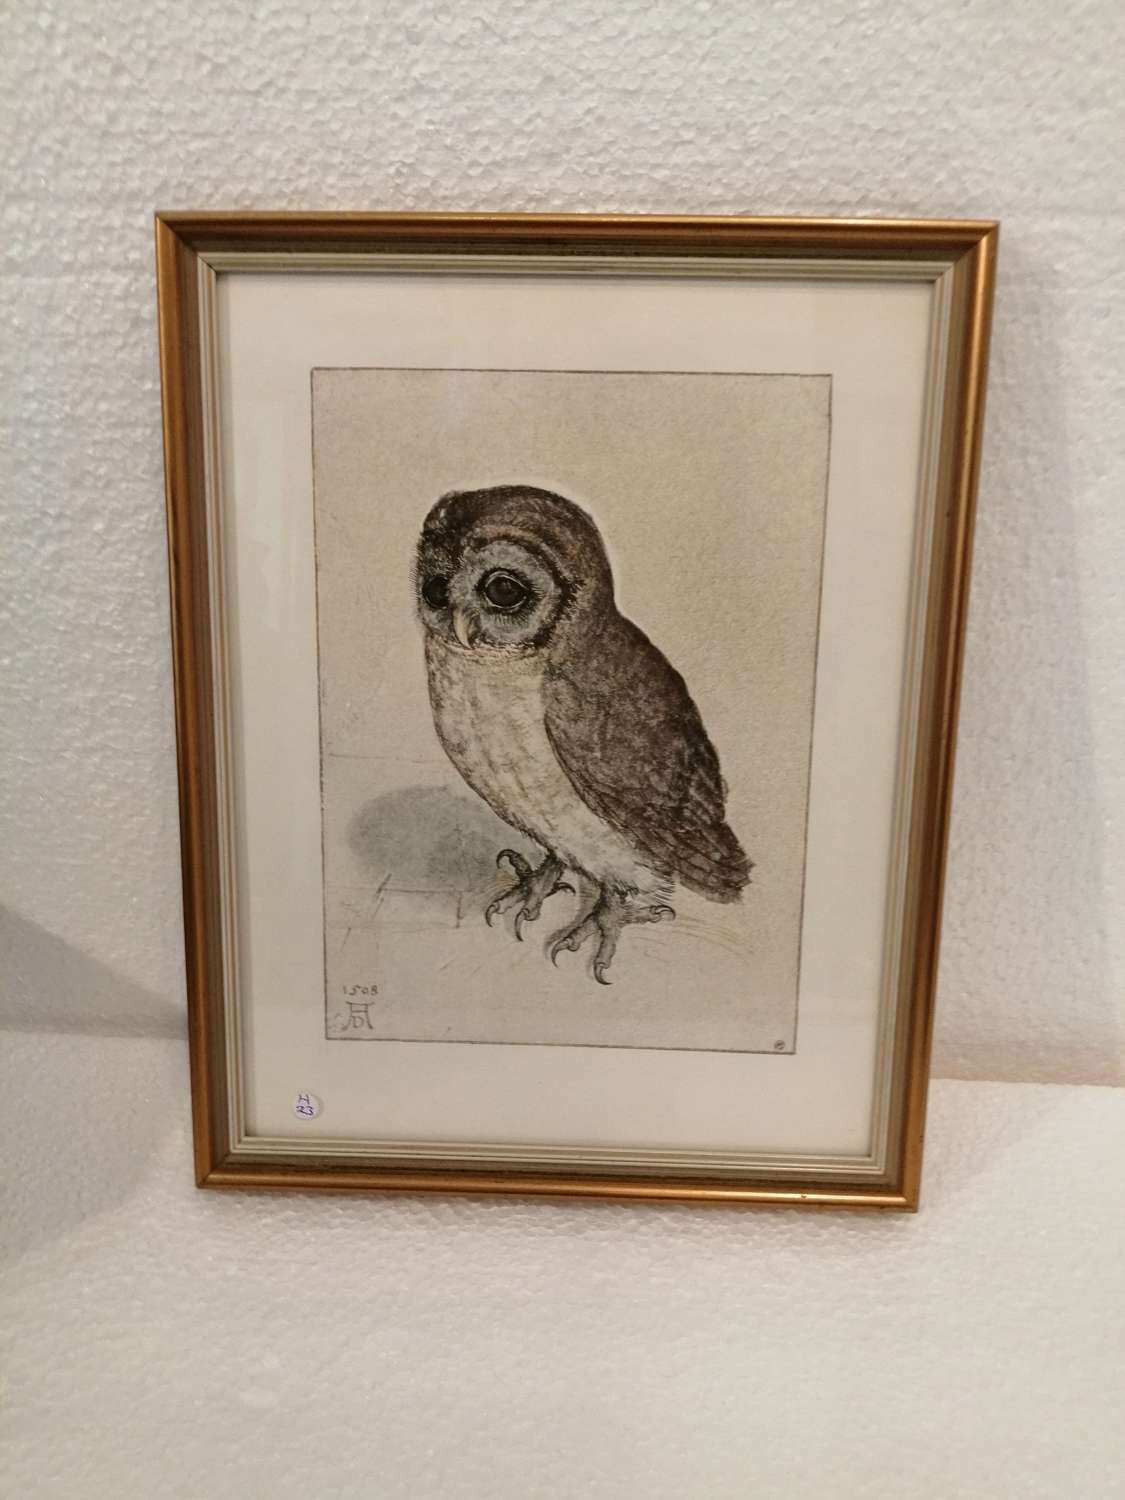 A charming Albrecht Durer print of a Little Owl